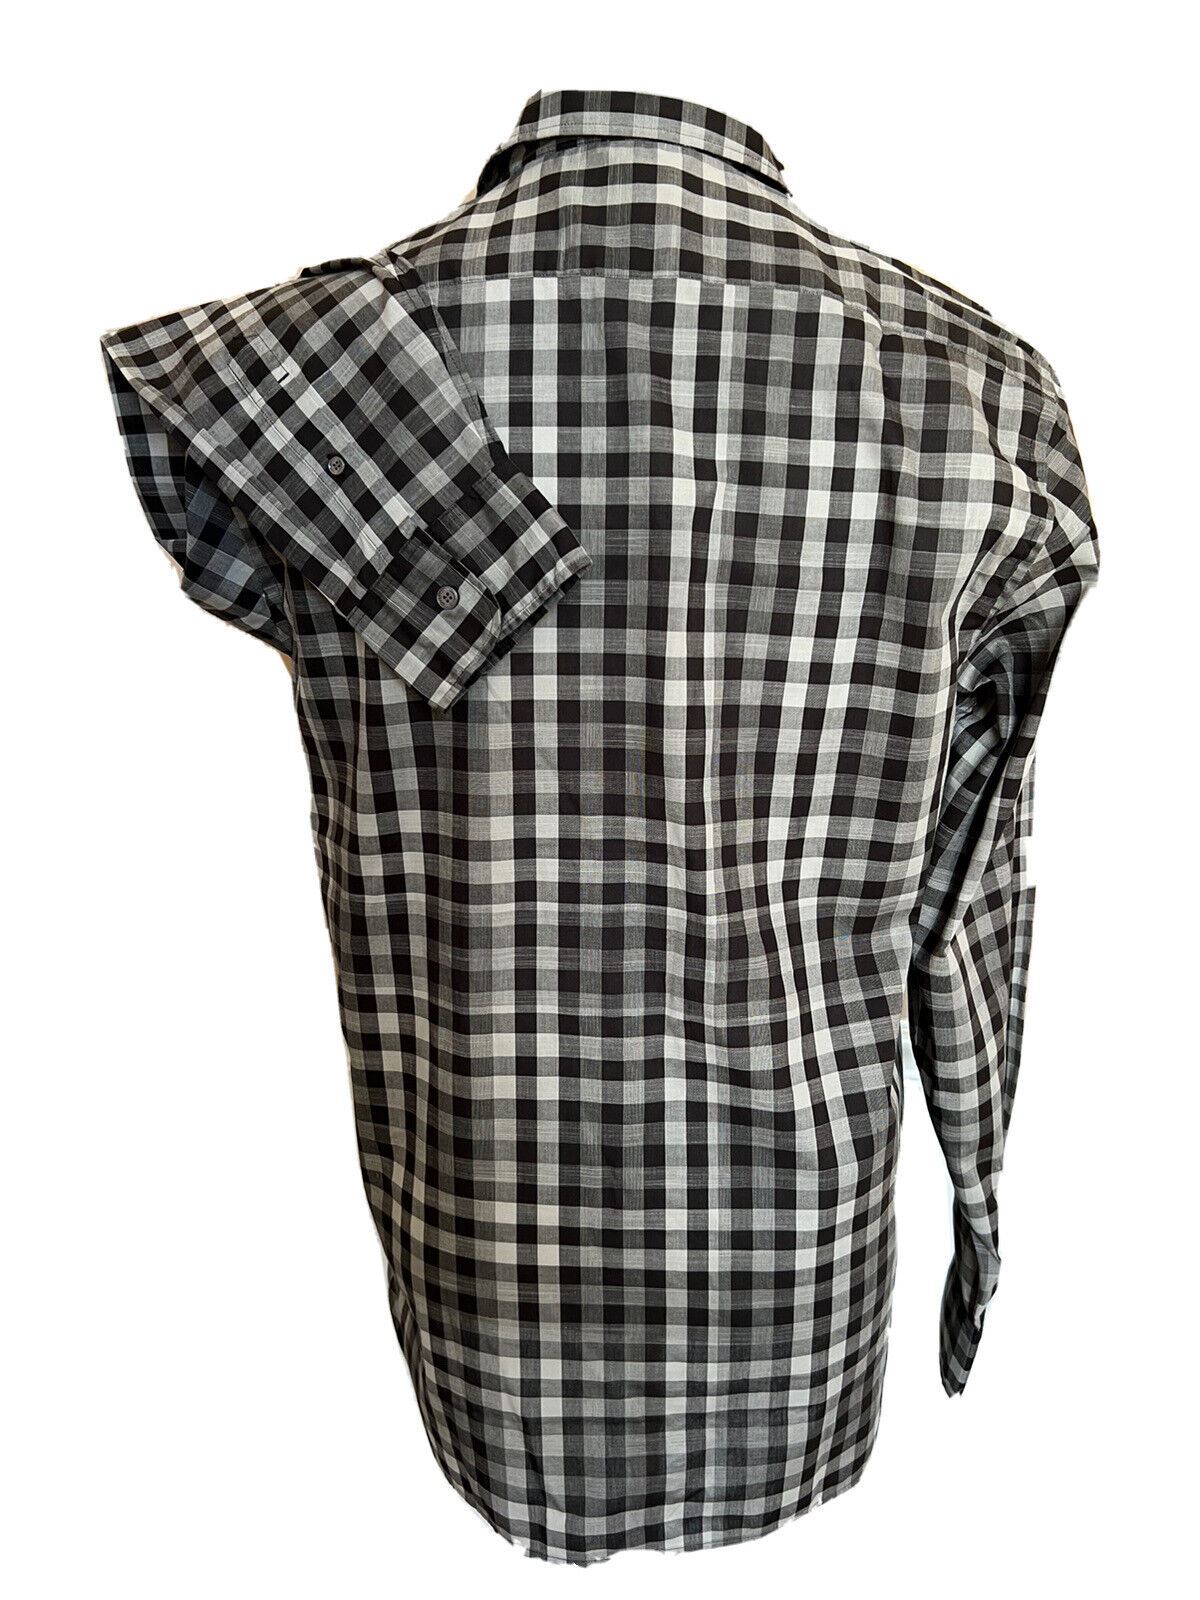 Мужская черная хлопковая рубашка на пуговицах Burberry стоимостью 250 долларов NWT, средняя 4015368